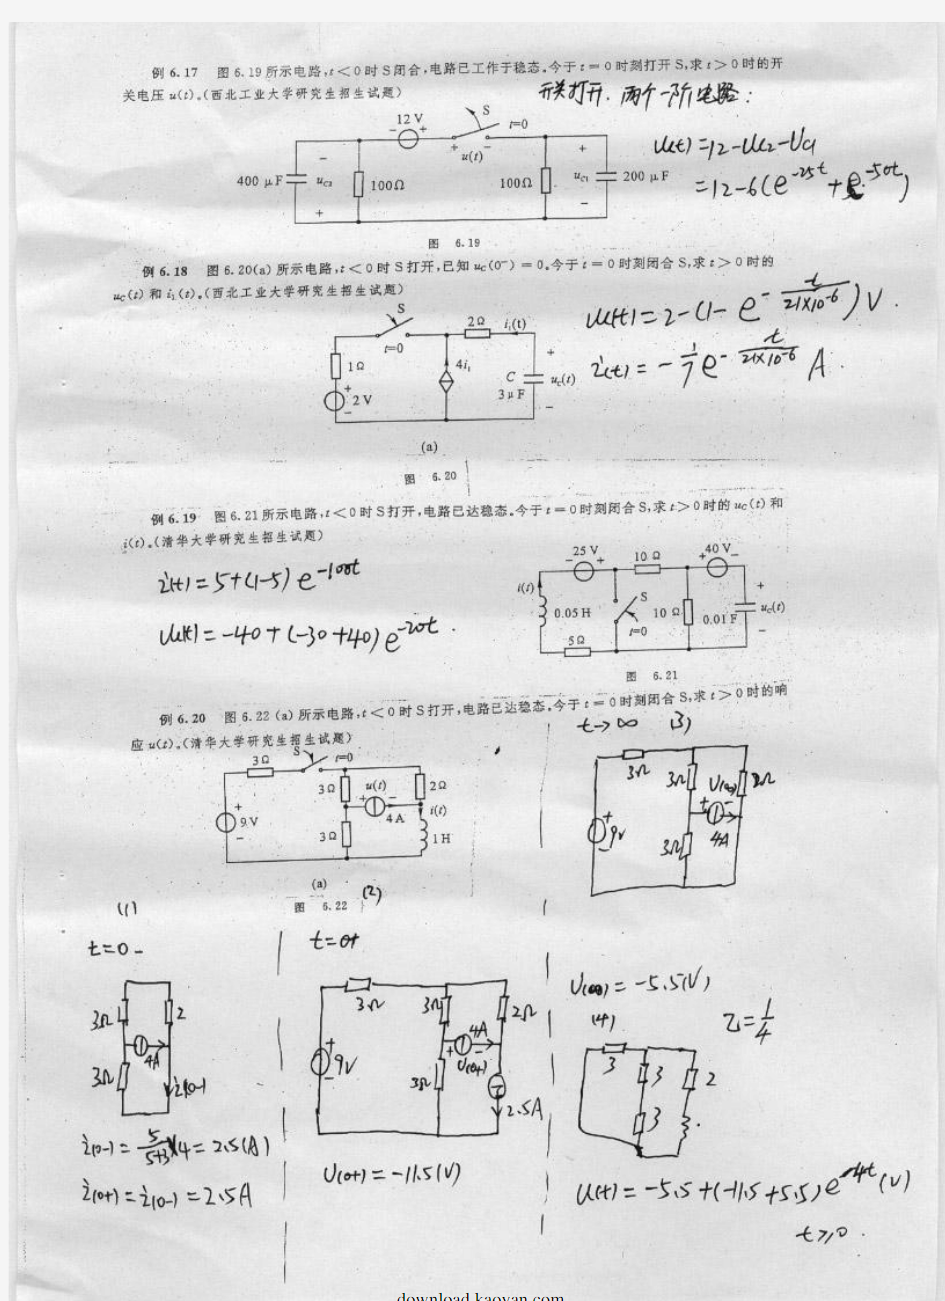 重庆大学电路原理考研笔记及部分试题